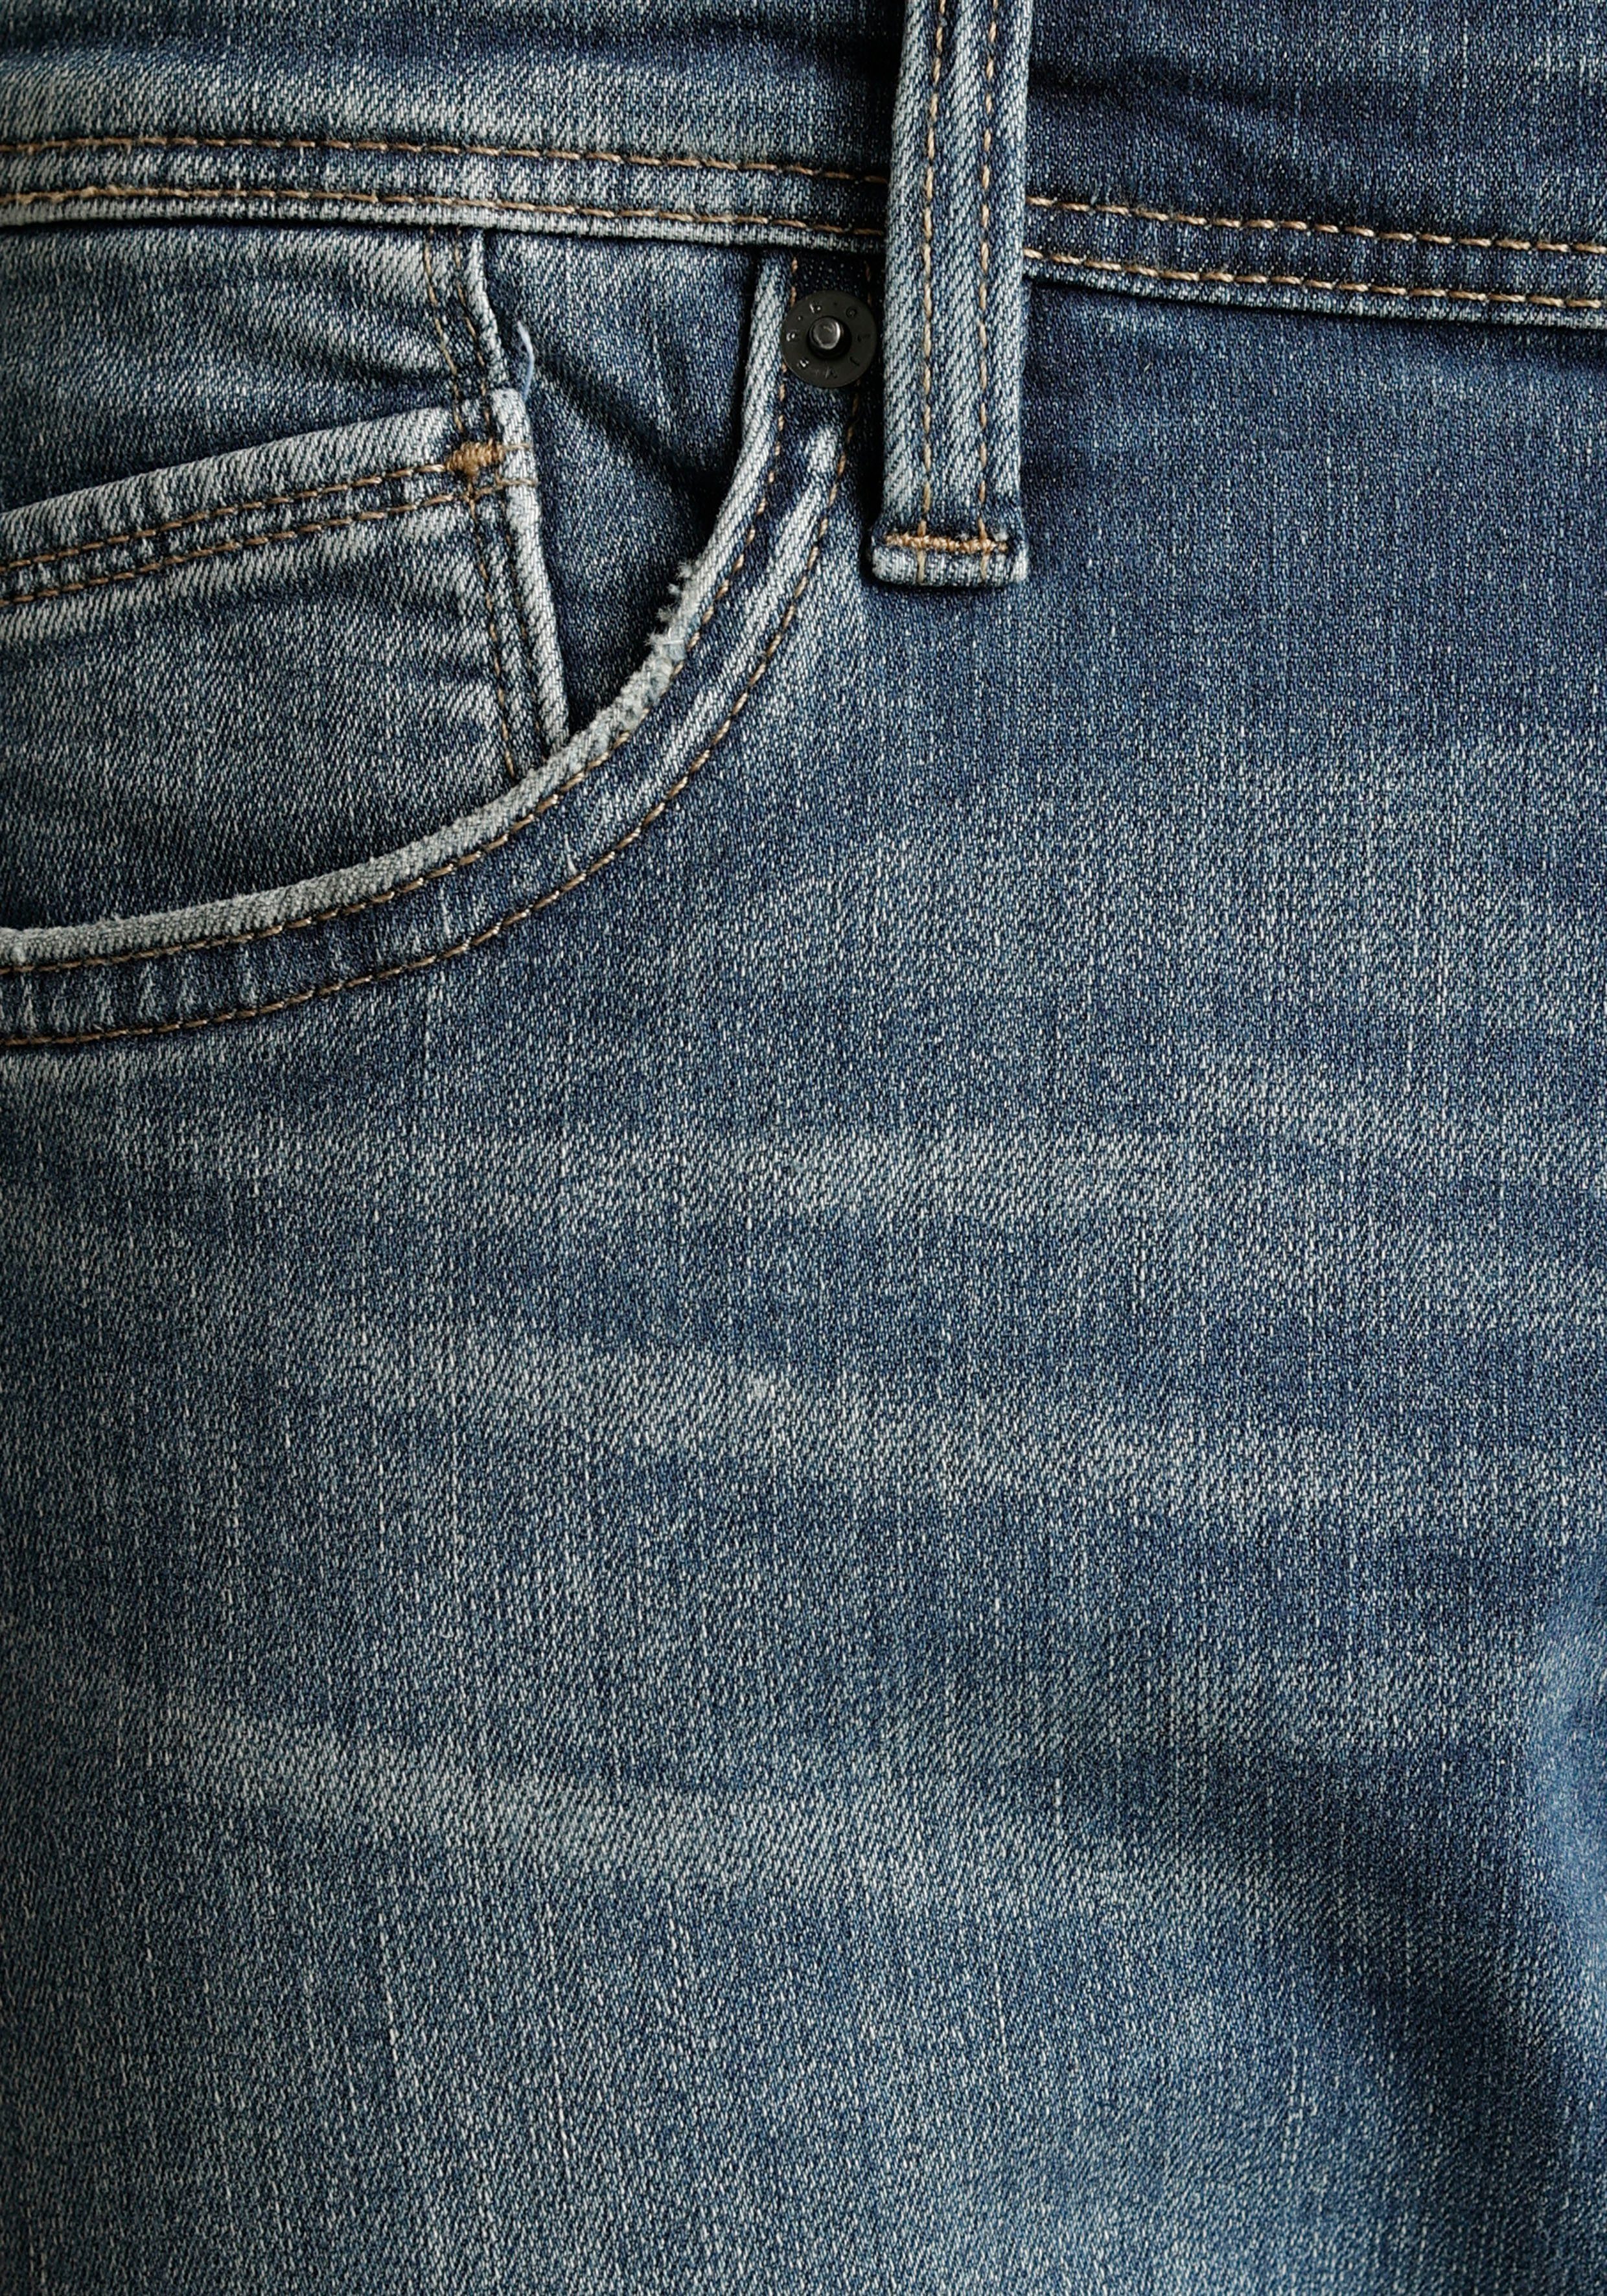 Gesäß- Eingrifftaschen Jeans blue light und Bequeme mit s.Oliver